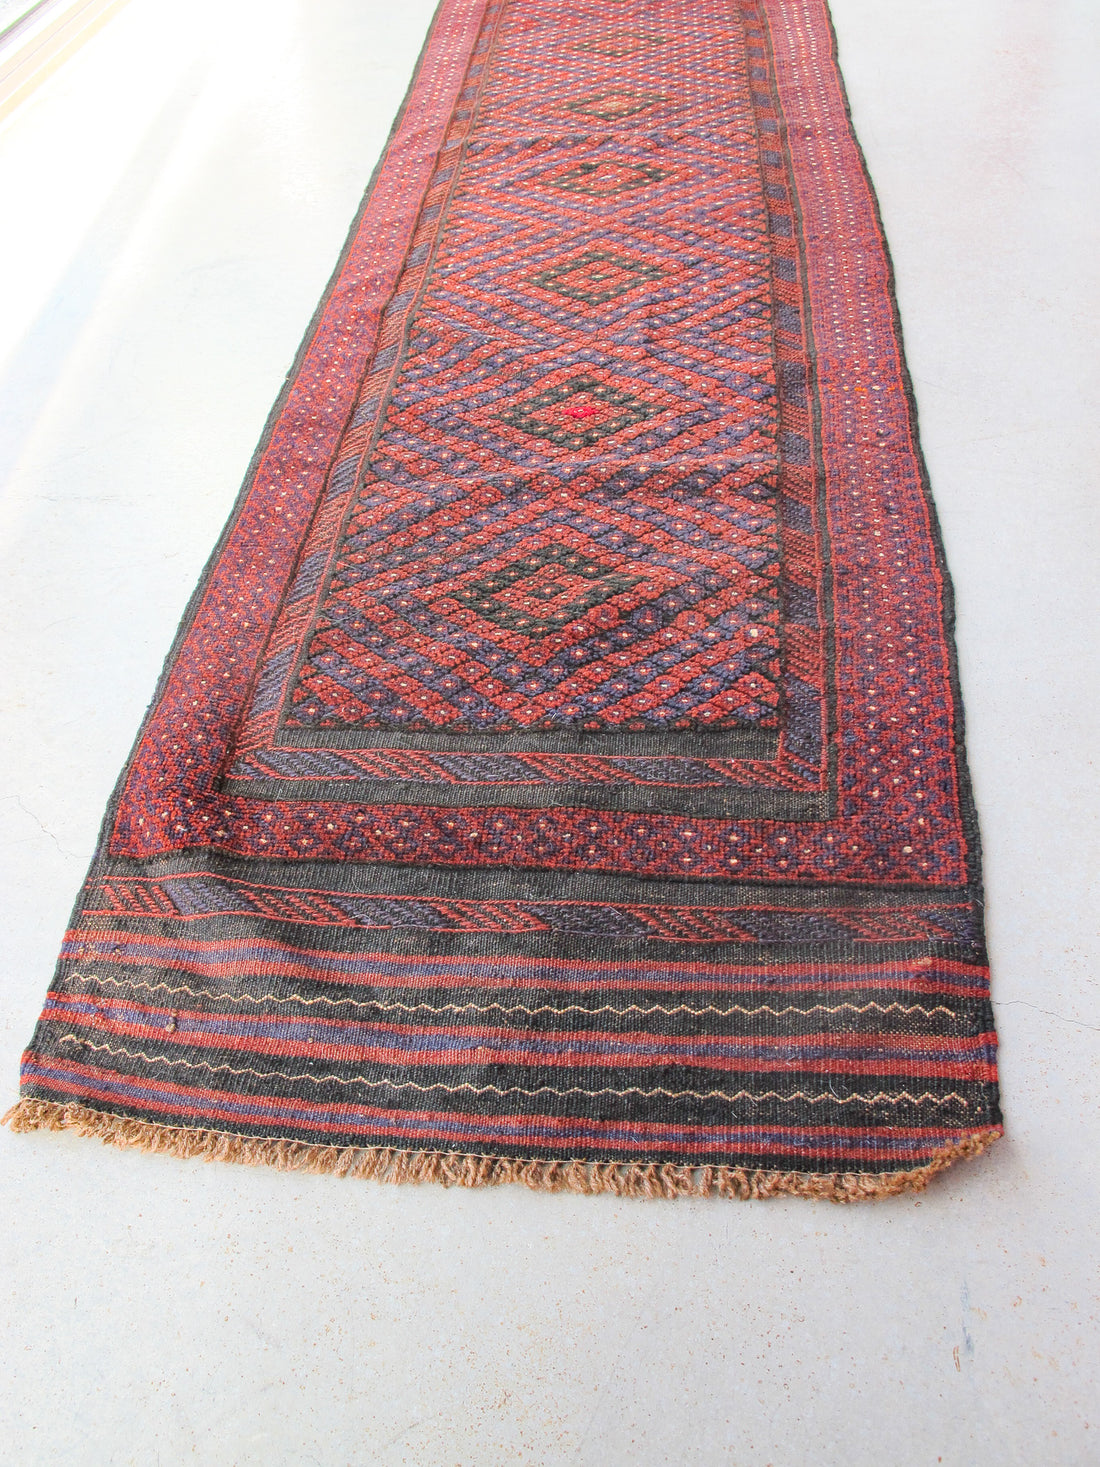 Turkish Vintage Kilim Runner Rug